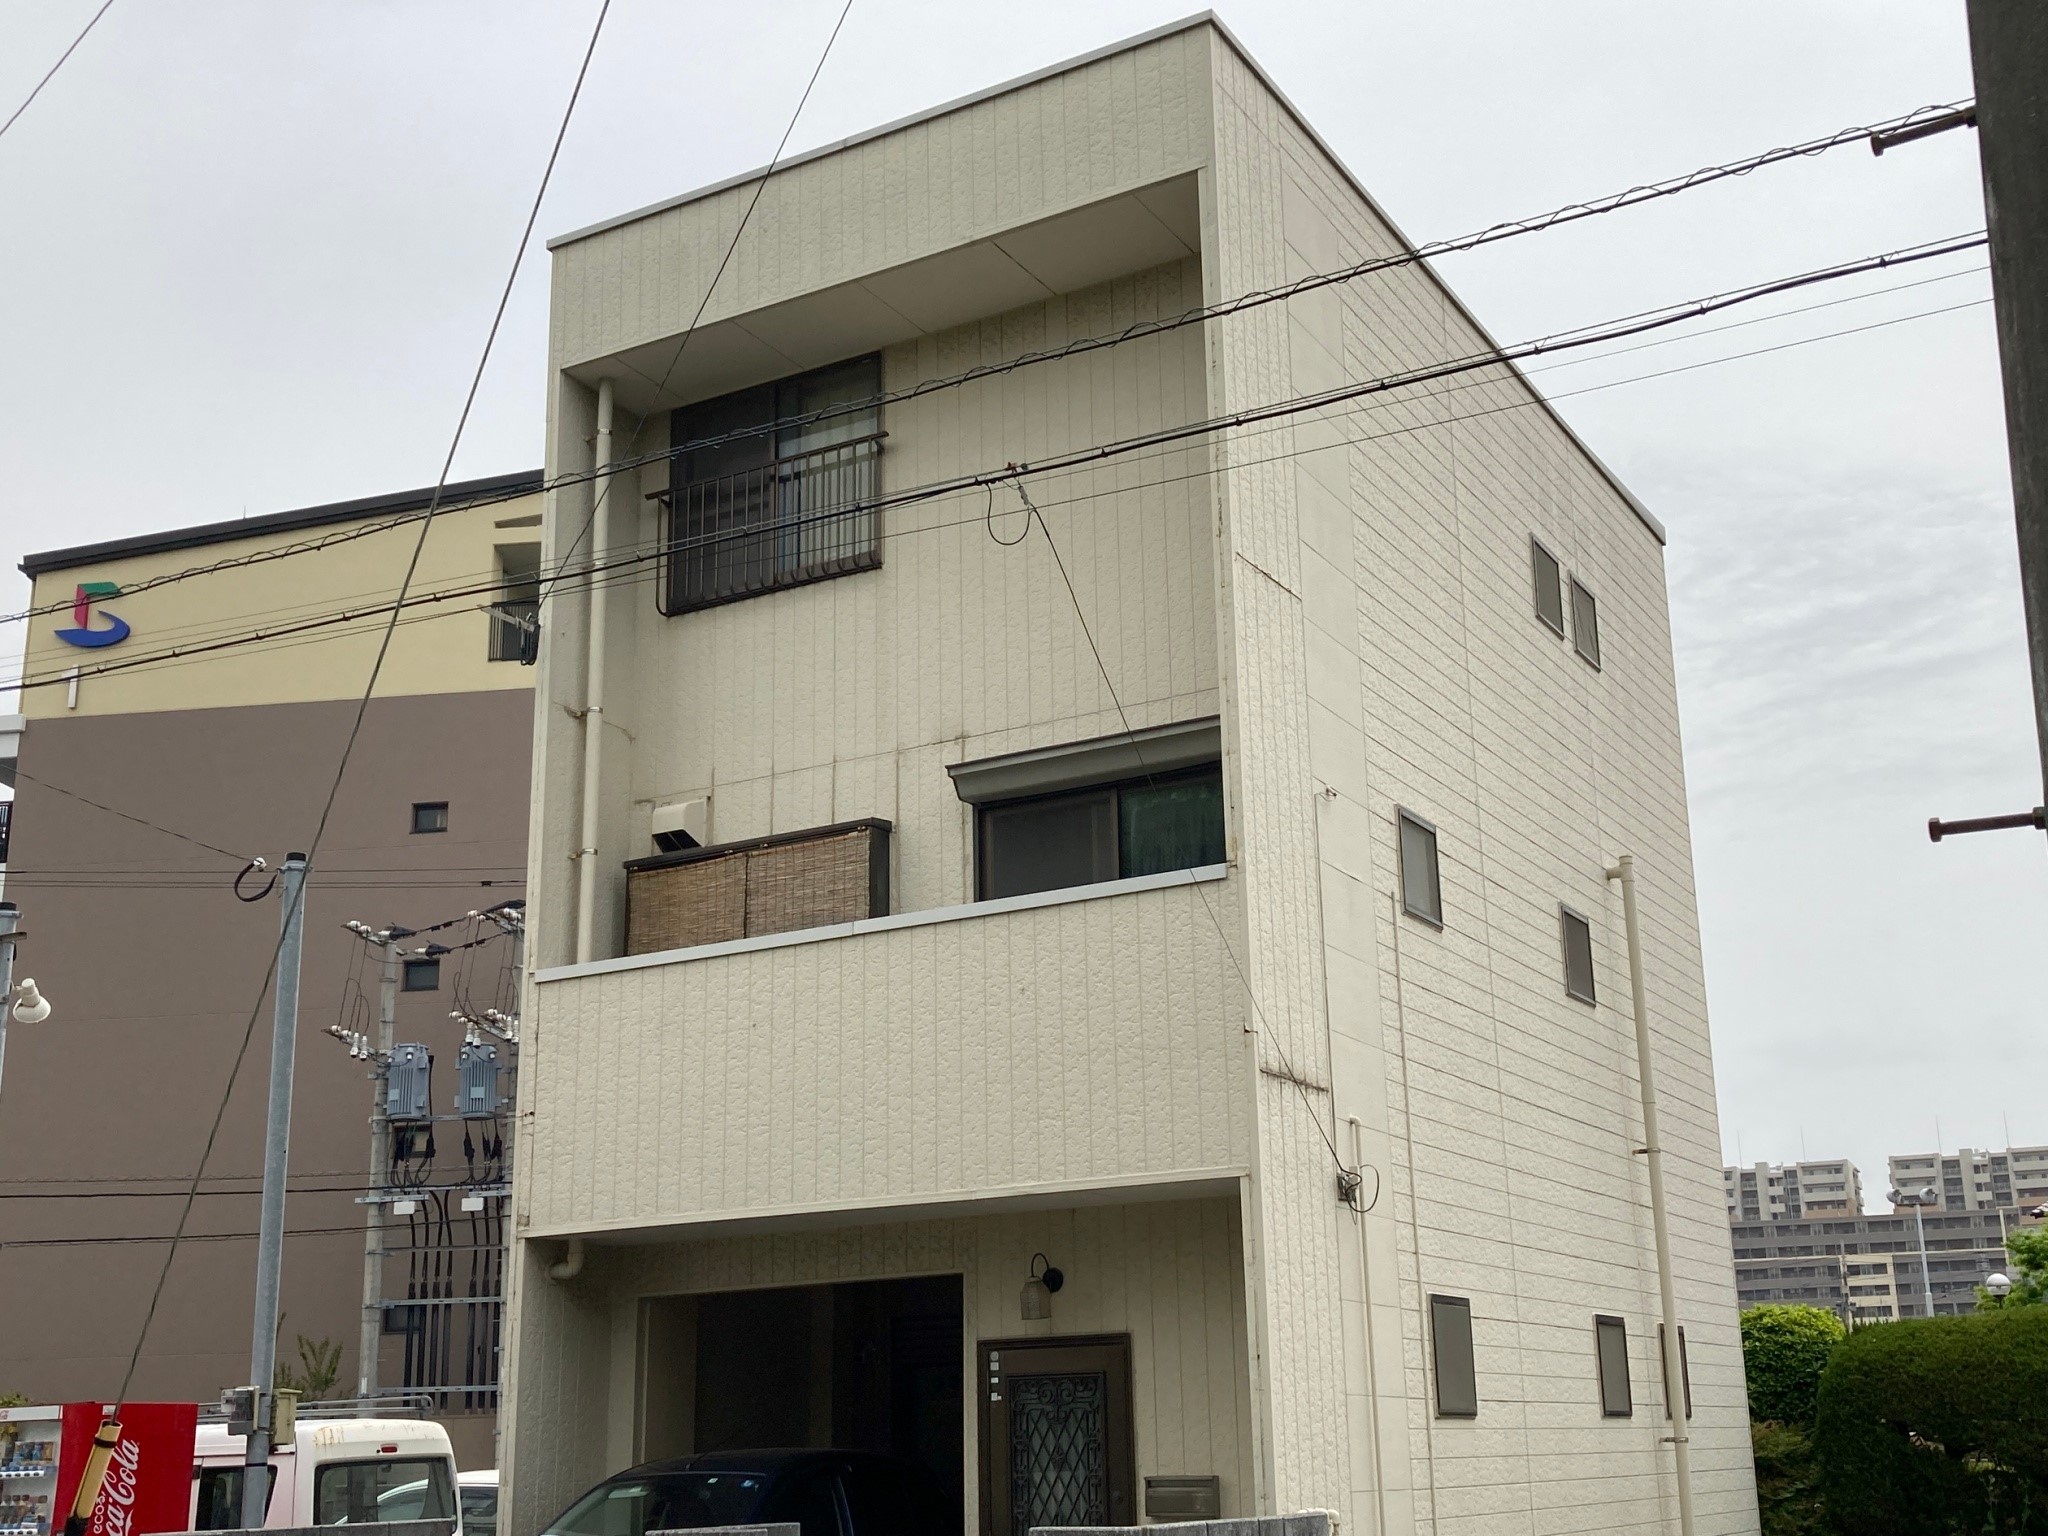 福岡県福岡市東区千早のA様邸でひび割れの補修や塗膜の剥がれを整えつつ高耐久塗料にて外壁と屋根の塗装を行いました。7/13完成です。【ホームページより】